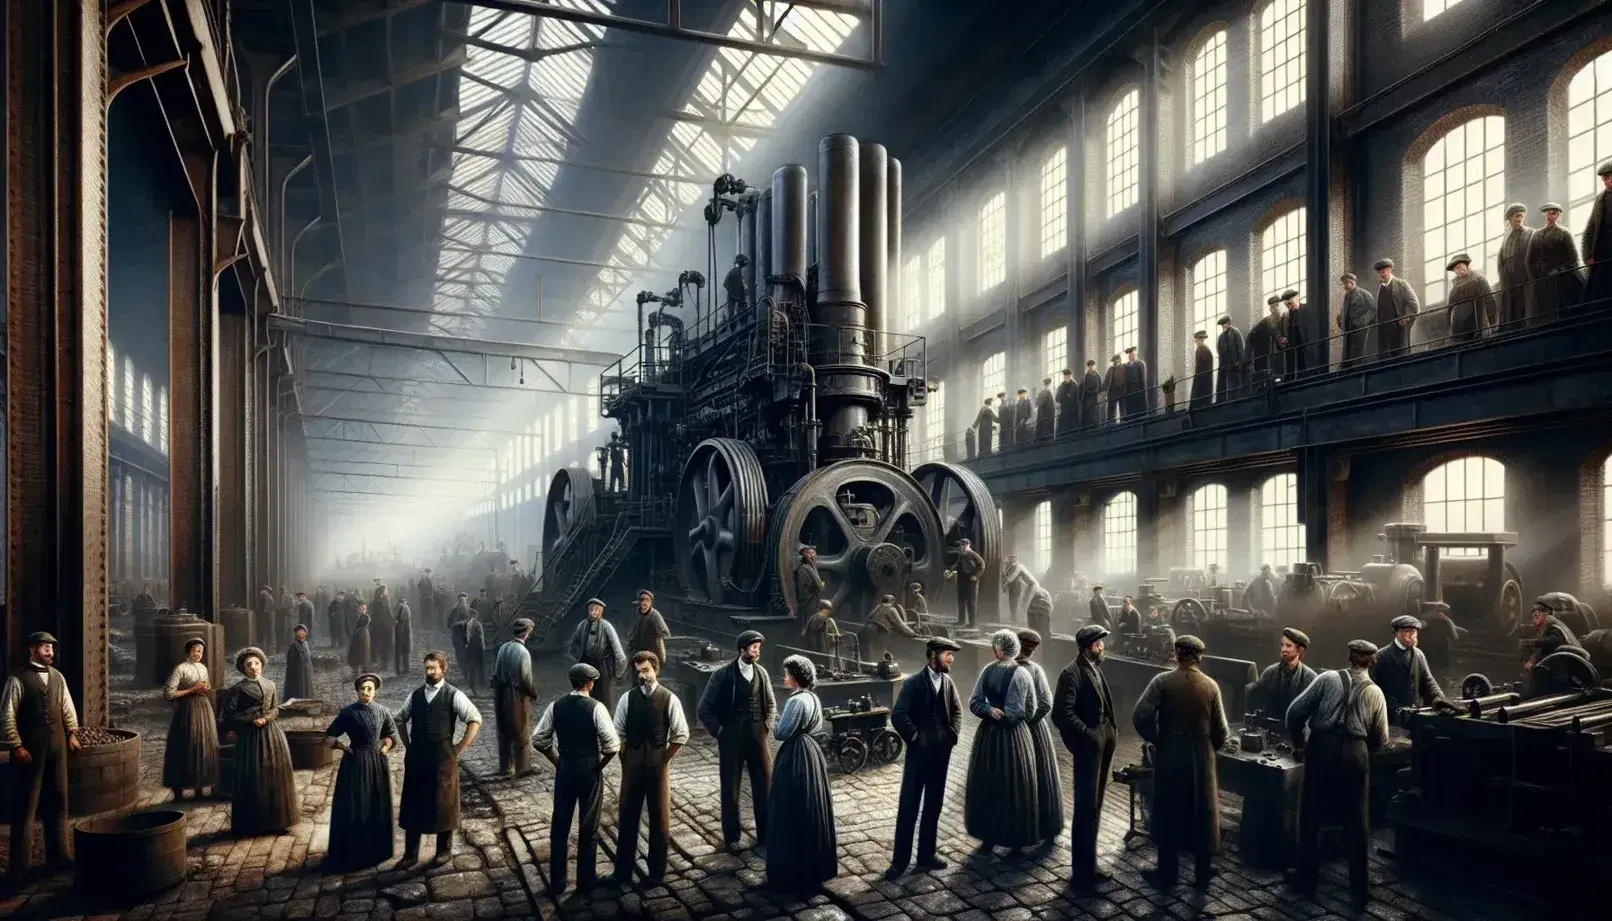 Trabajadores en fábrica de la Revolución Industrial junto a máquina de vapor en funcionamiento, iluminados por luz natural.